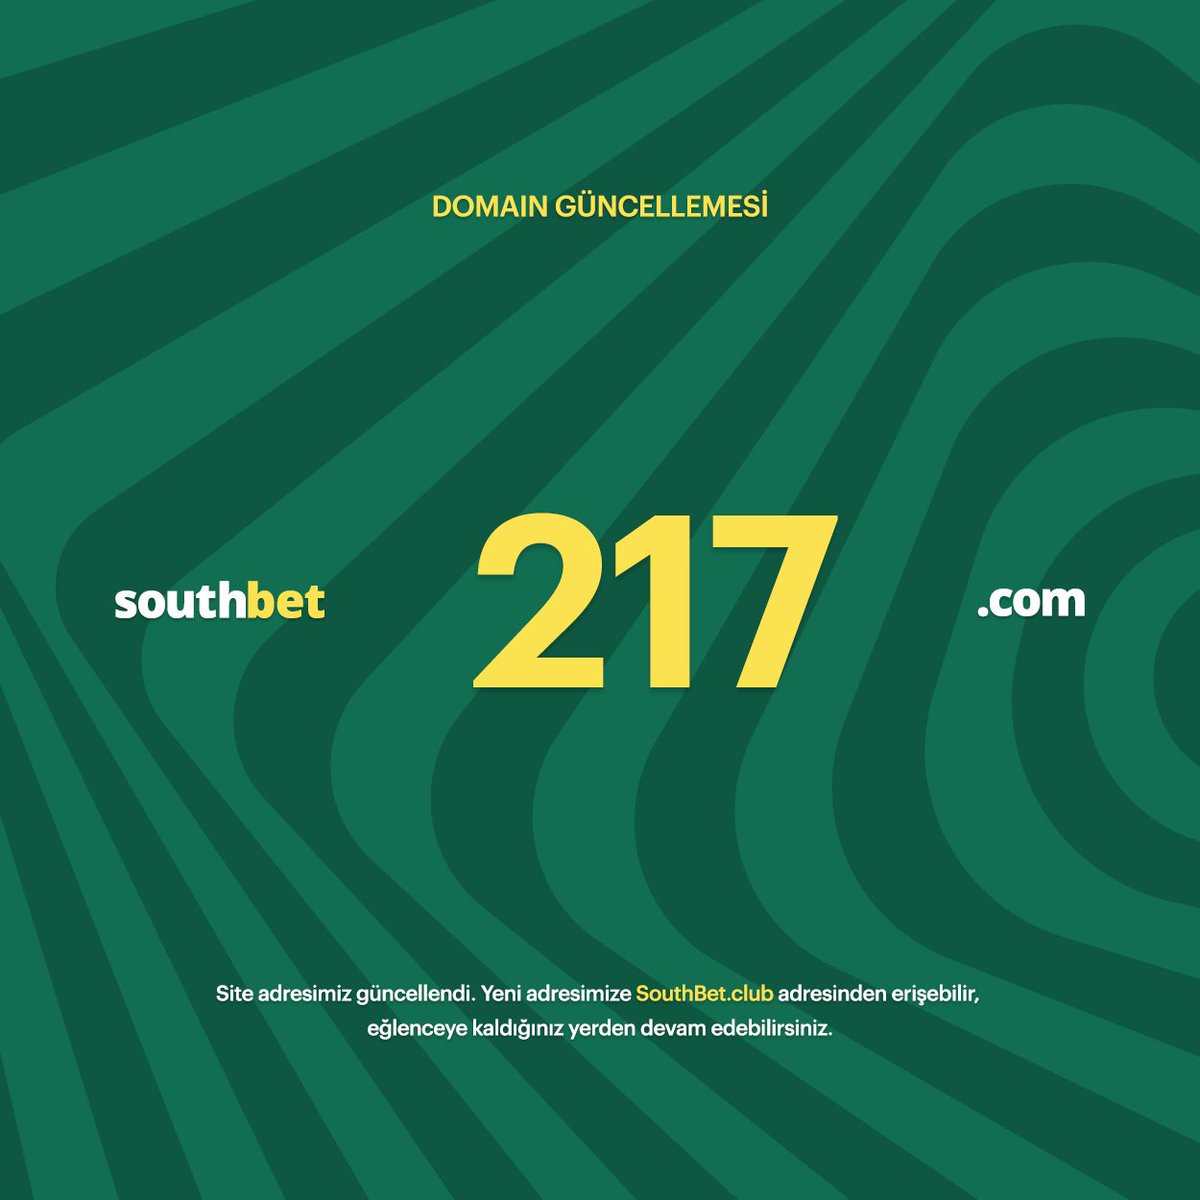 🍀 Değerli #SouthBet üyeleri, Yeni adresimiz SouthBet217.com olarak güncellenmiştir. 🔗 SouthBet.club 🟢 Keyifli vakitler geçirmenizi diliyoruz.